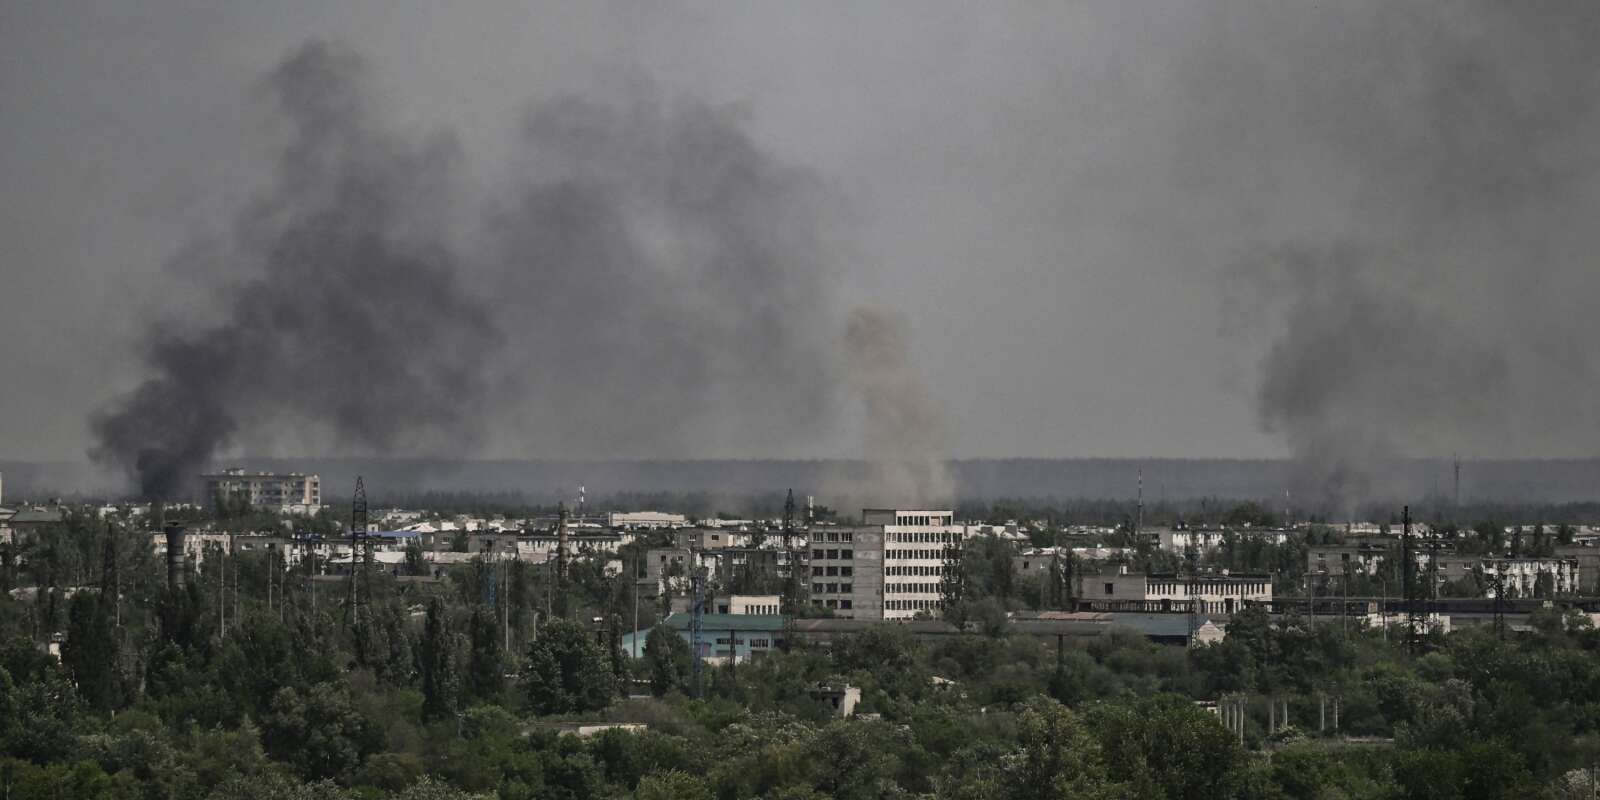 De la fumée et de la poussière s’élèvent de la ville de Sievierodonetsk, lors d’un bombardement dans la région ukrainienne du Donbass, le 26 mai 2022/